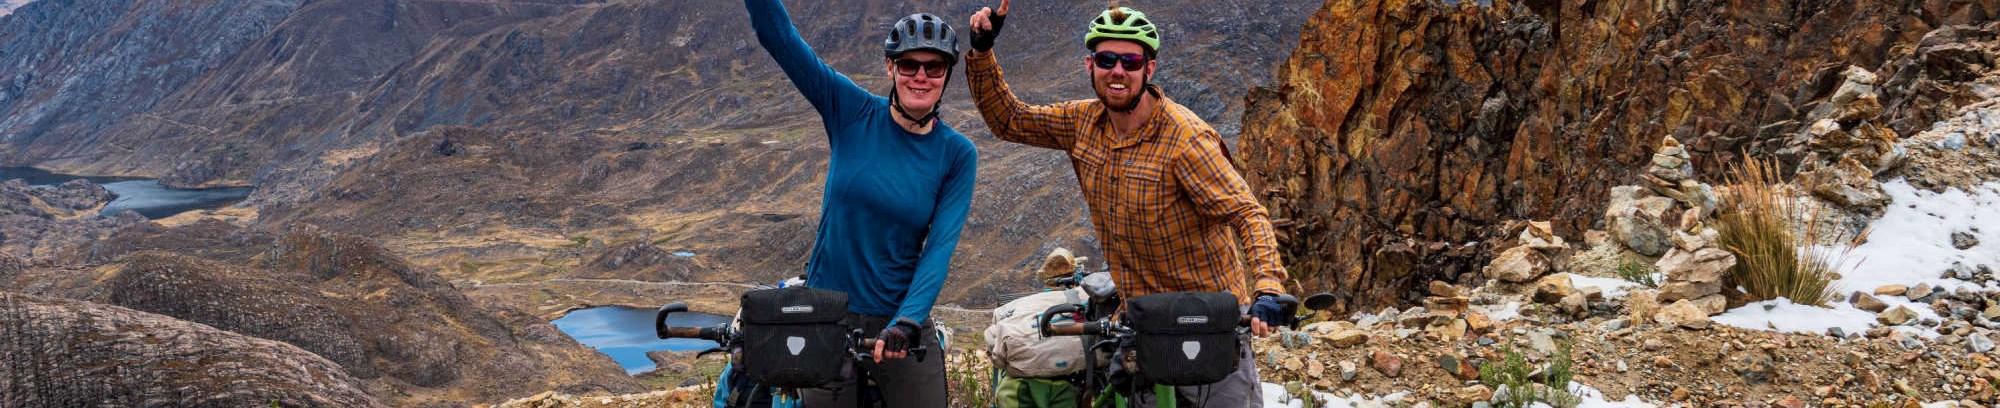 Par der cyklede verden rundt på 21 måneder